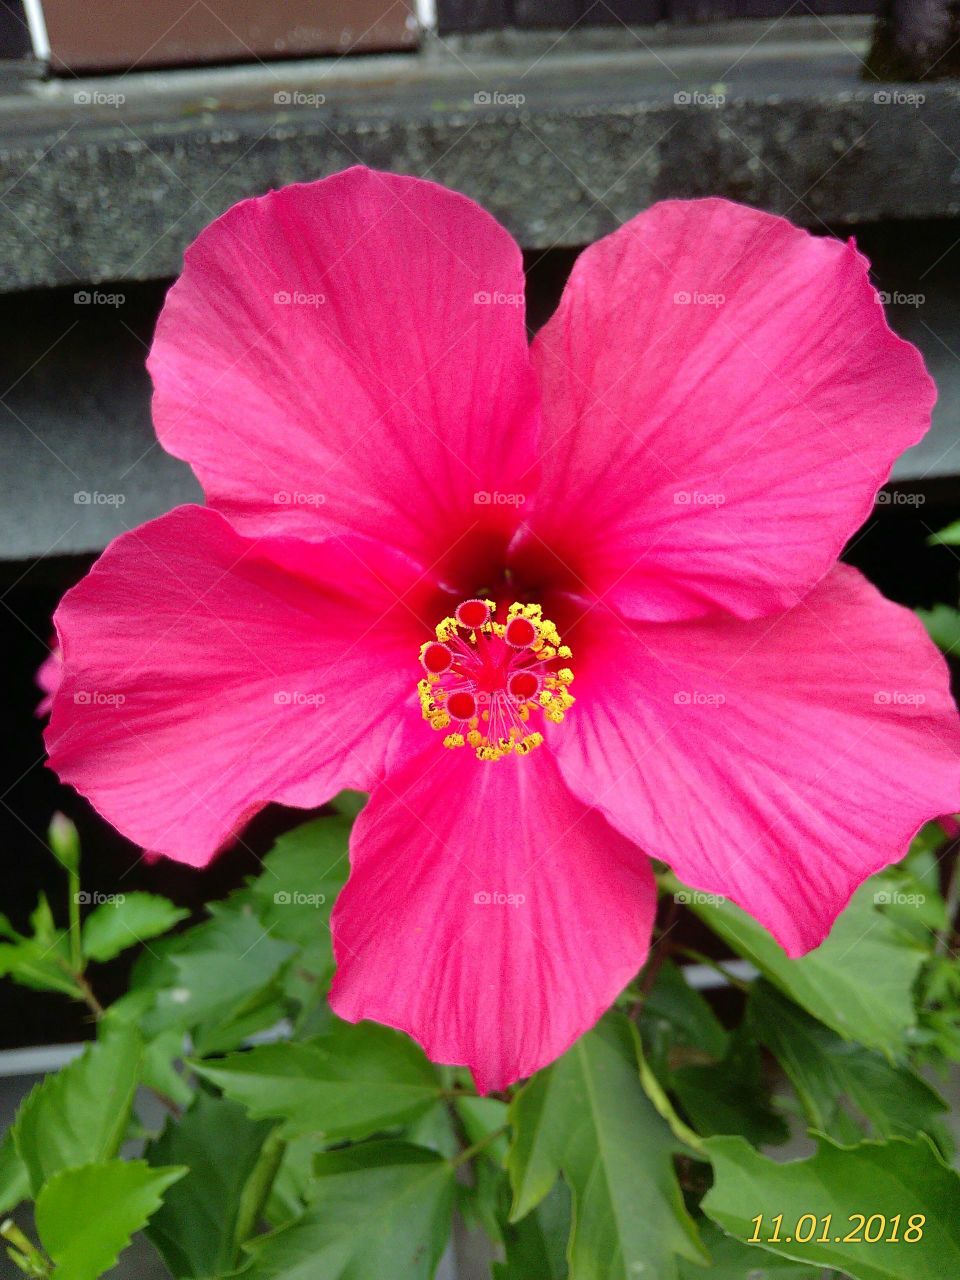 The gumamella flower is color pink.